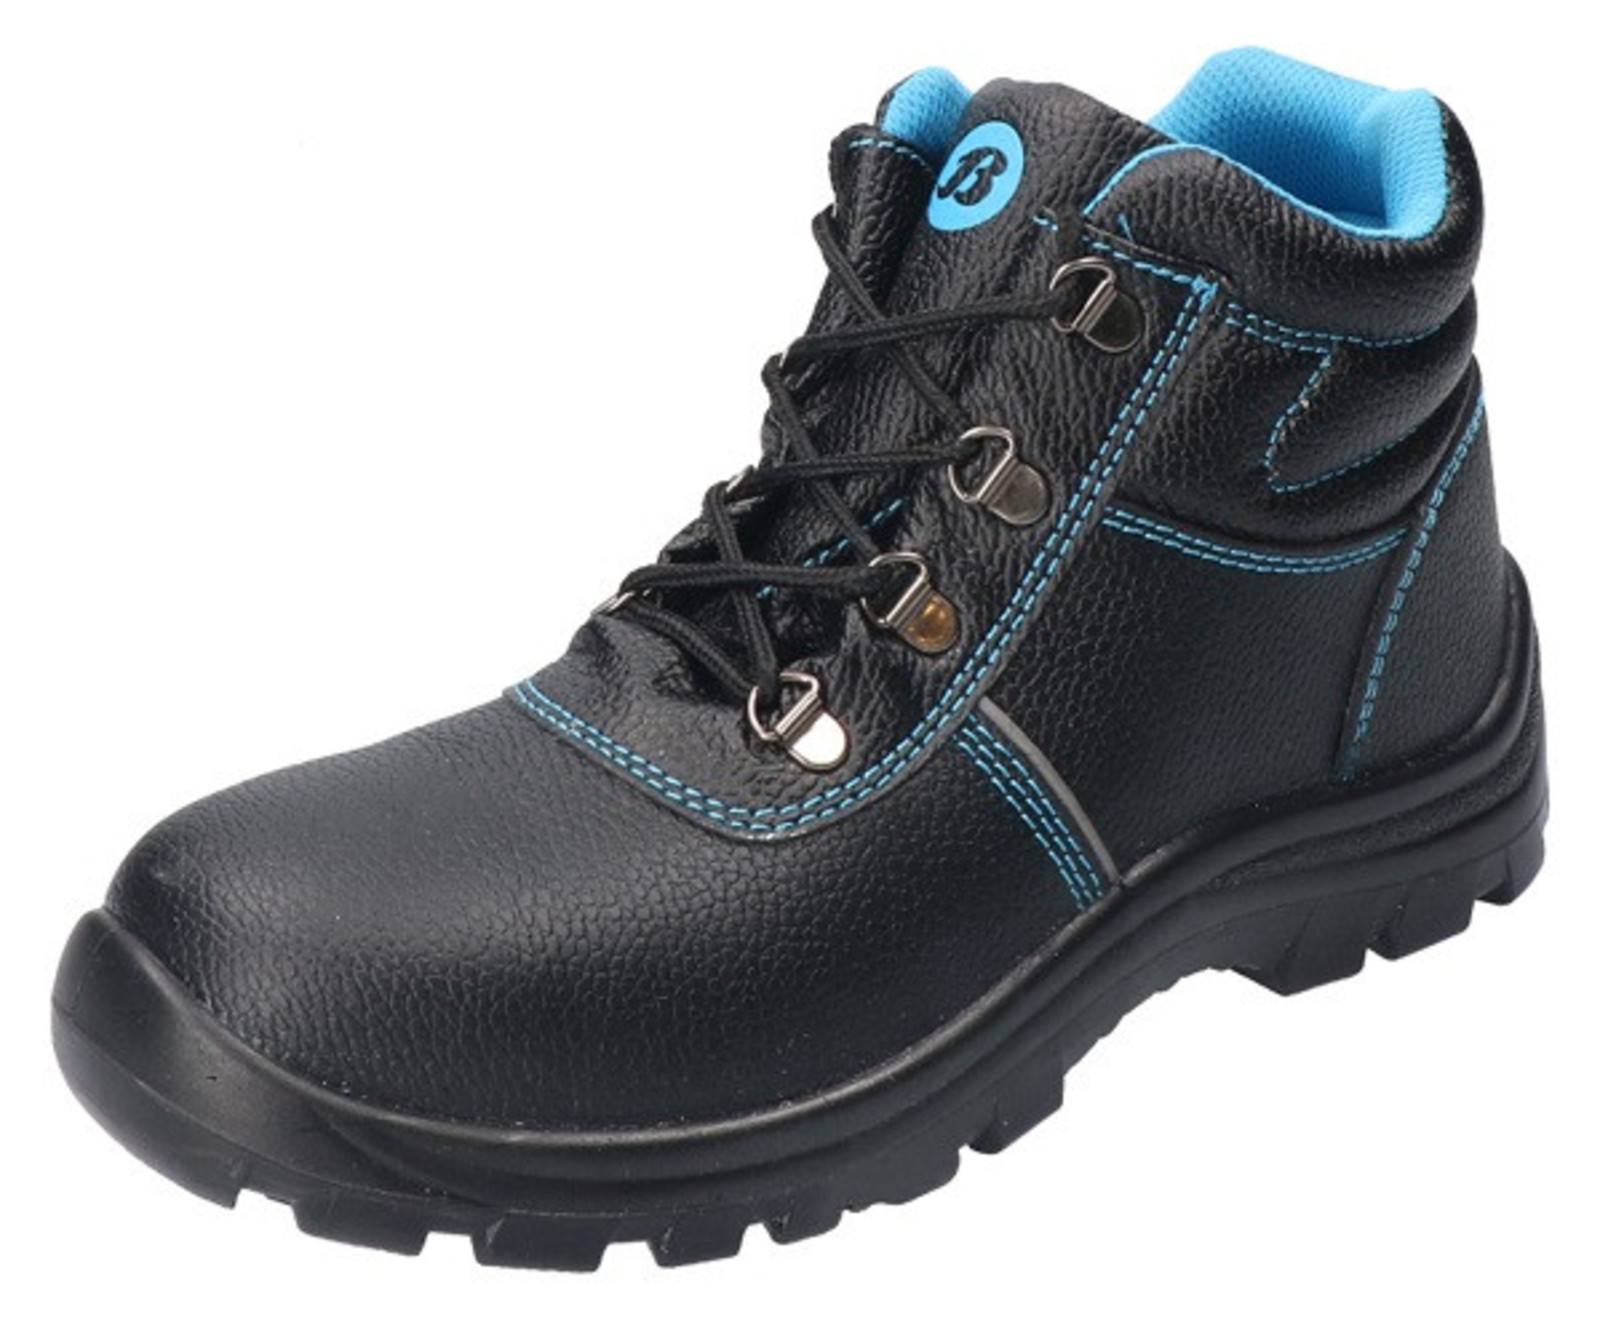 Bezpečnostná obuv Baťa Sirocco S3 - veľkosť: 42, farba: čierna